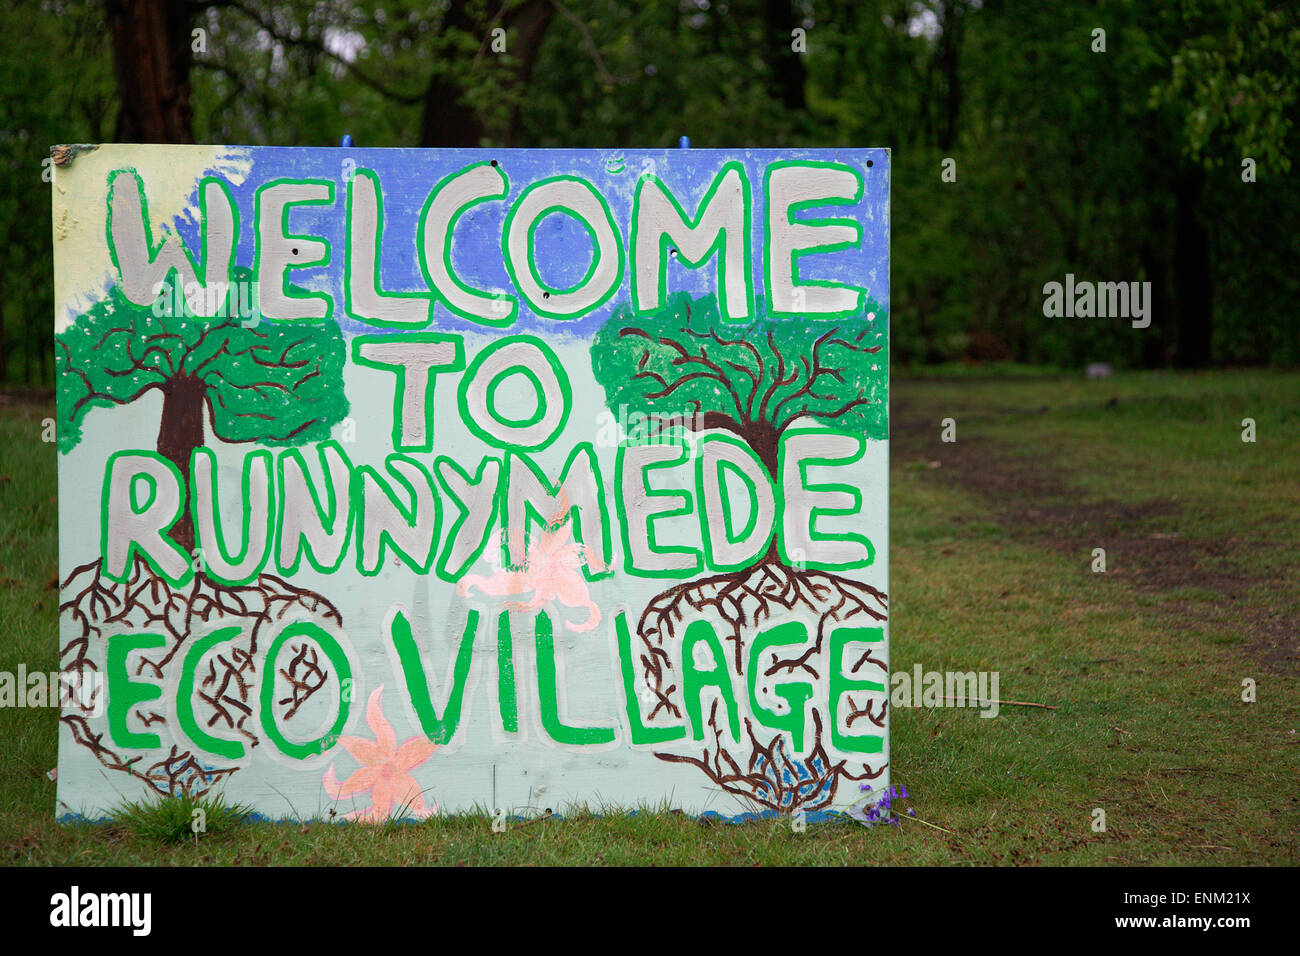 Zeichen für das "Öko-Dorf" in Runnymede Wald begrüßen zu dürfen. Eine Gemeinschaft von Menschen, die einen alternativen Lebensstil eingerichtet. Stockfoto